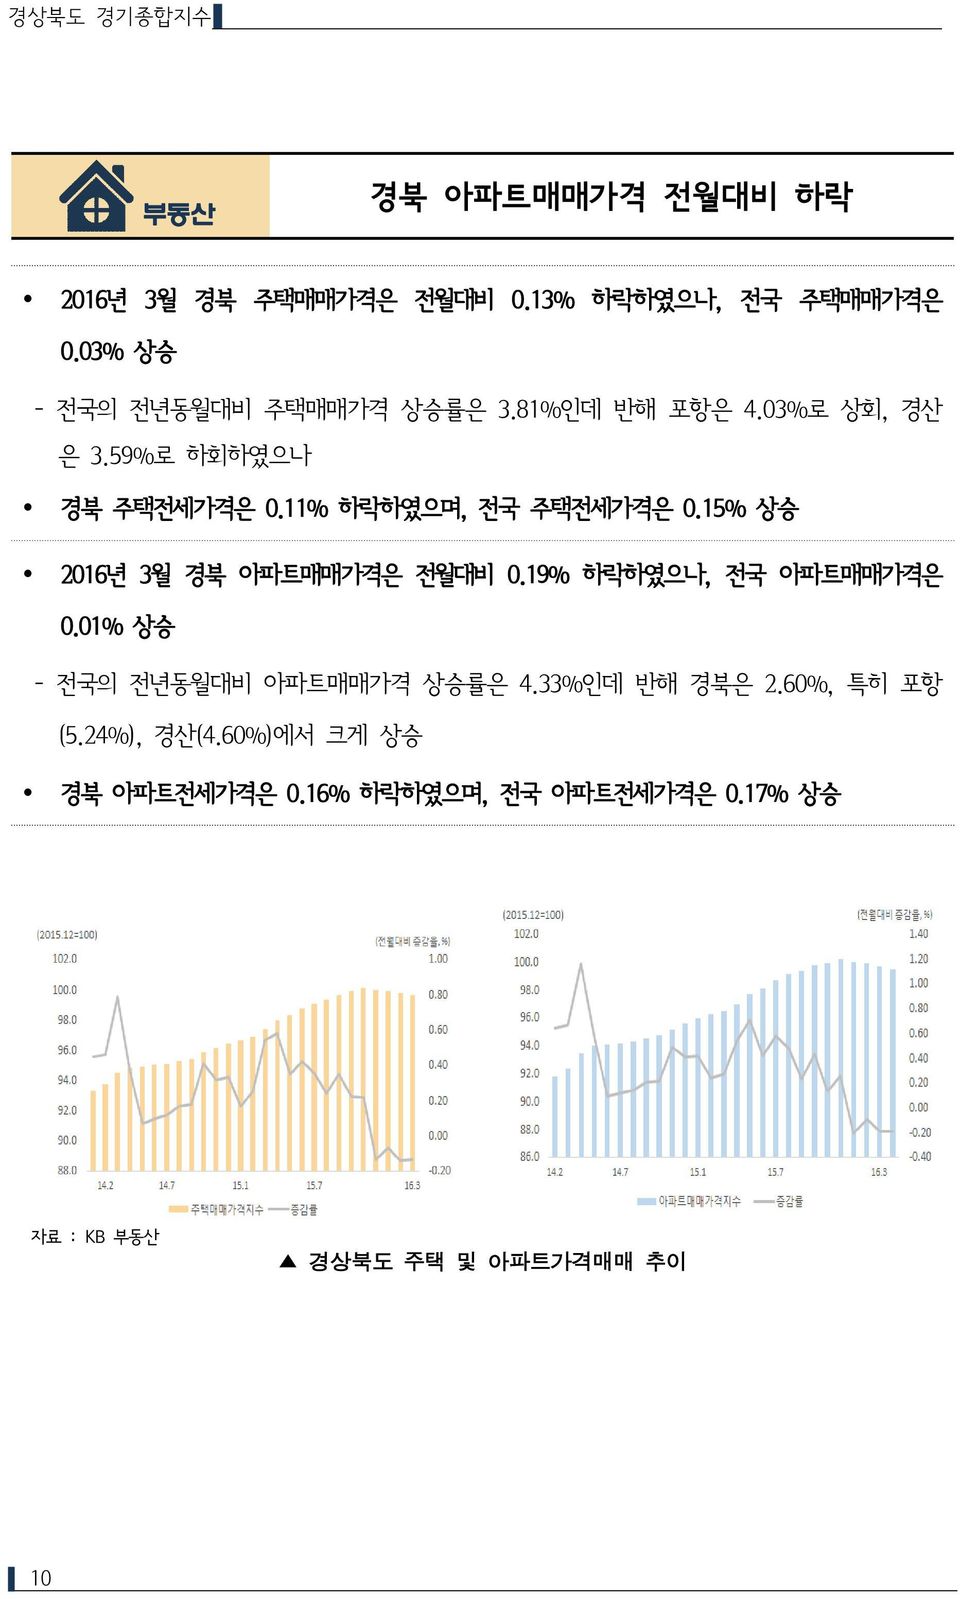 11% 하락하였으며, 전국 주택전세가격은 0.15% 상승 2016년 3월 경북 아파트매매가격은 전월대비 0.19% 하락하였으나, 전국 아파트매매가격은 0.